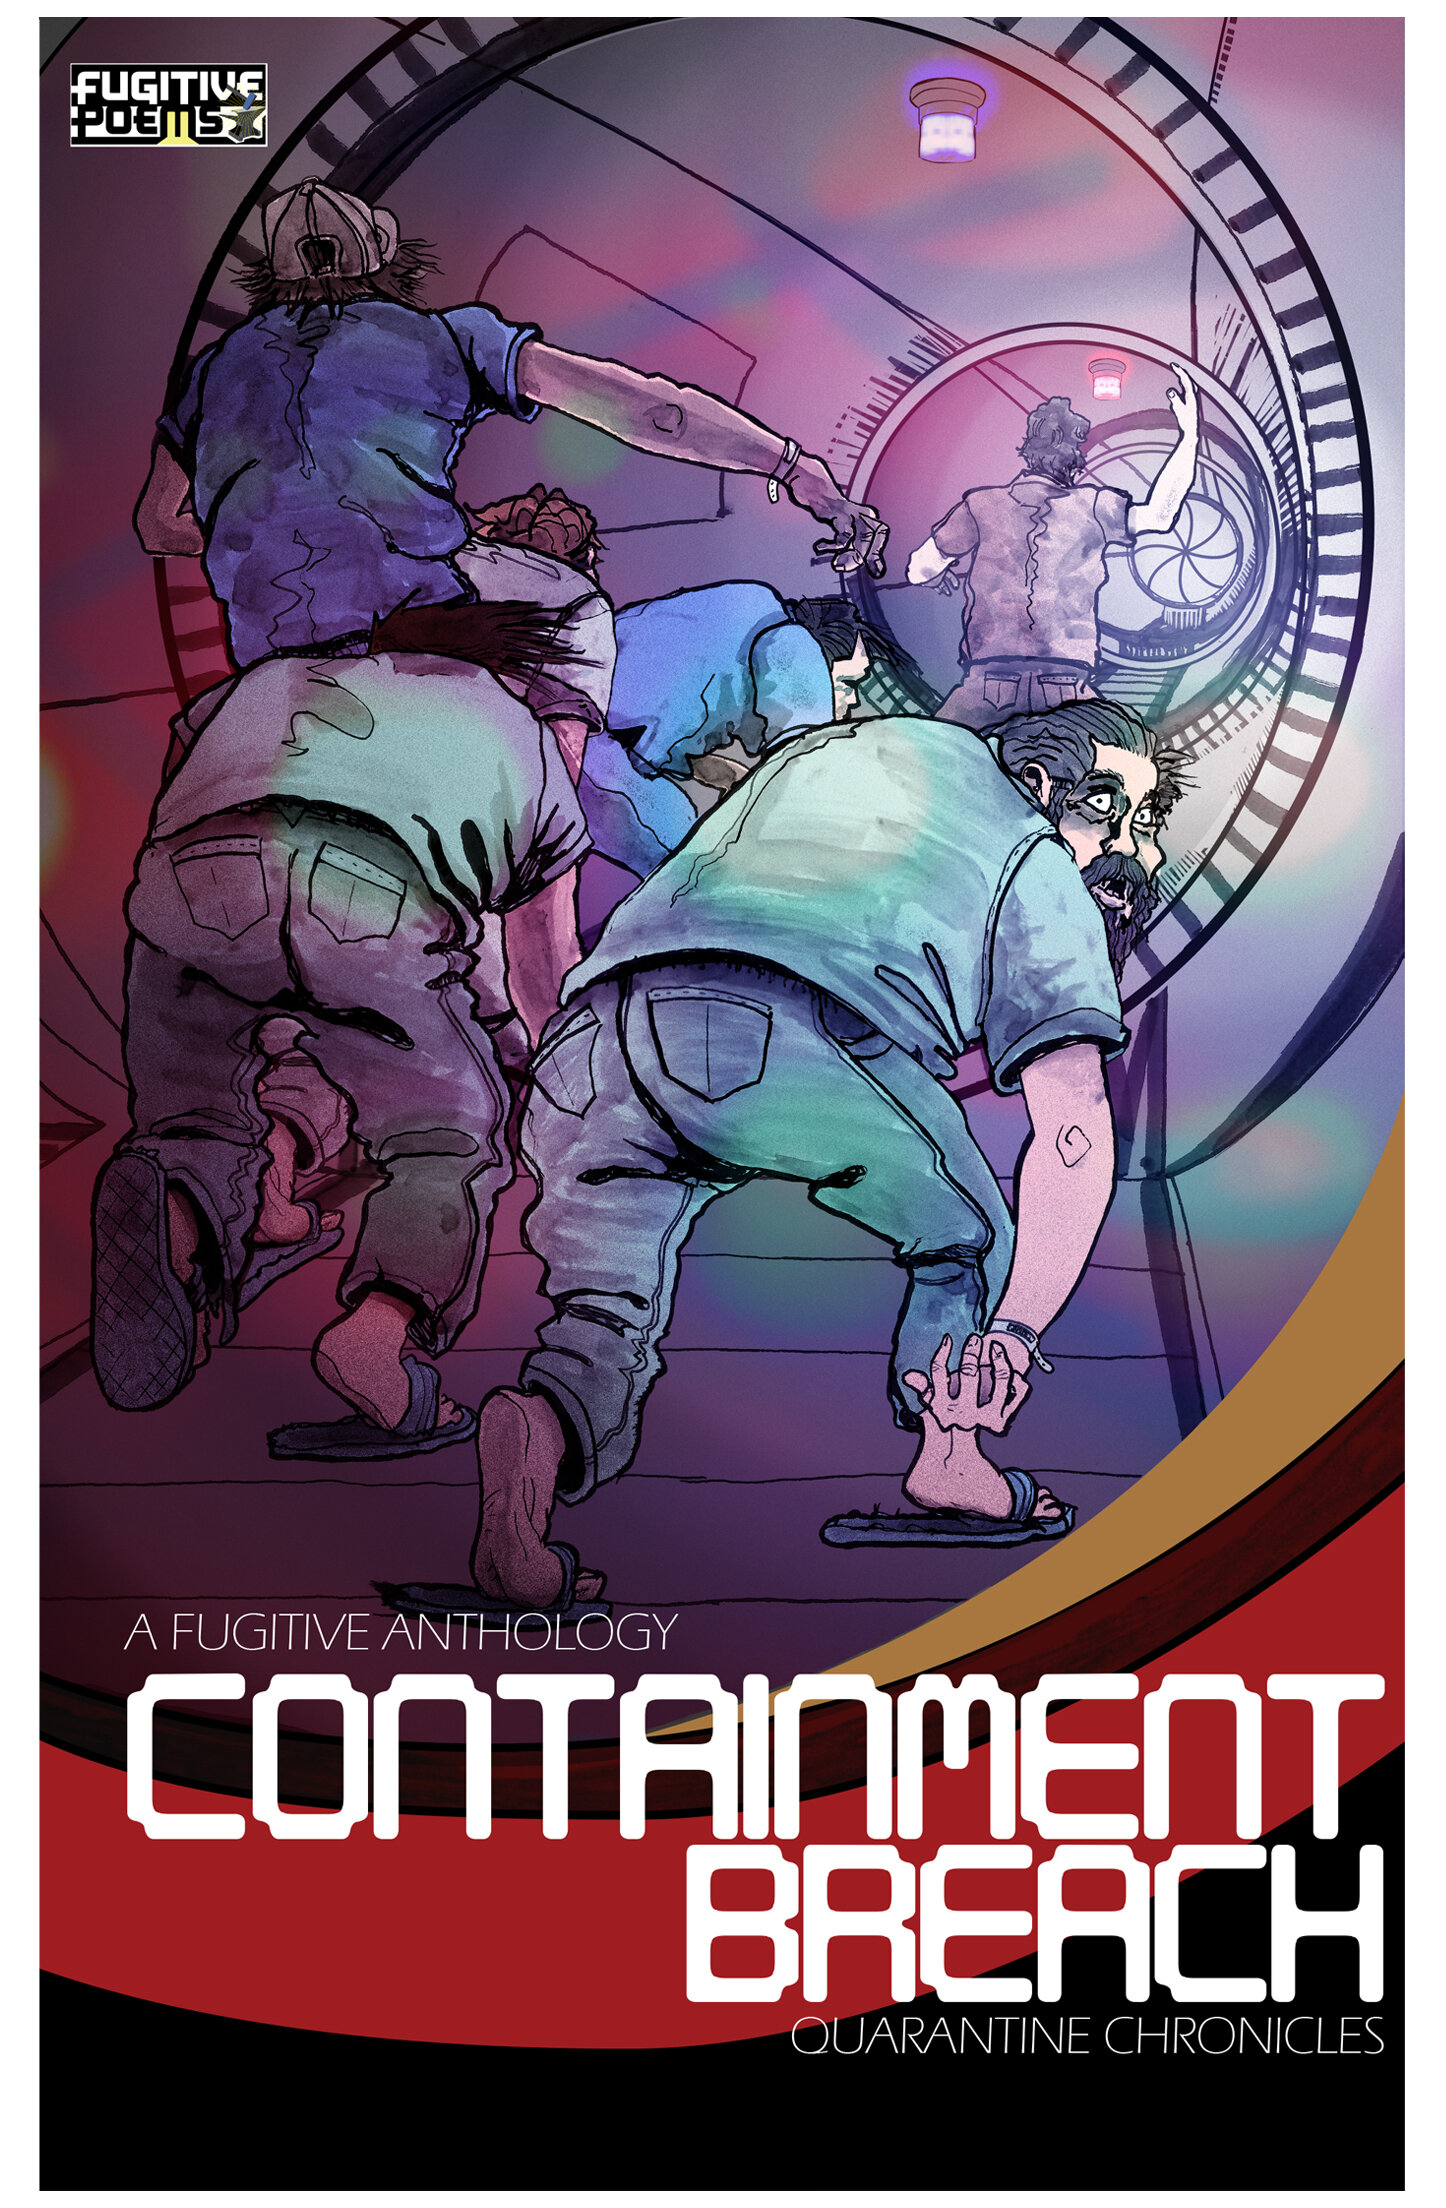 Containment Breach, Vol. 1: Quarantine Chronicles